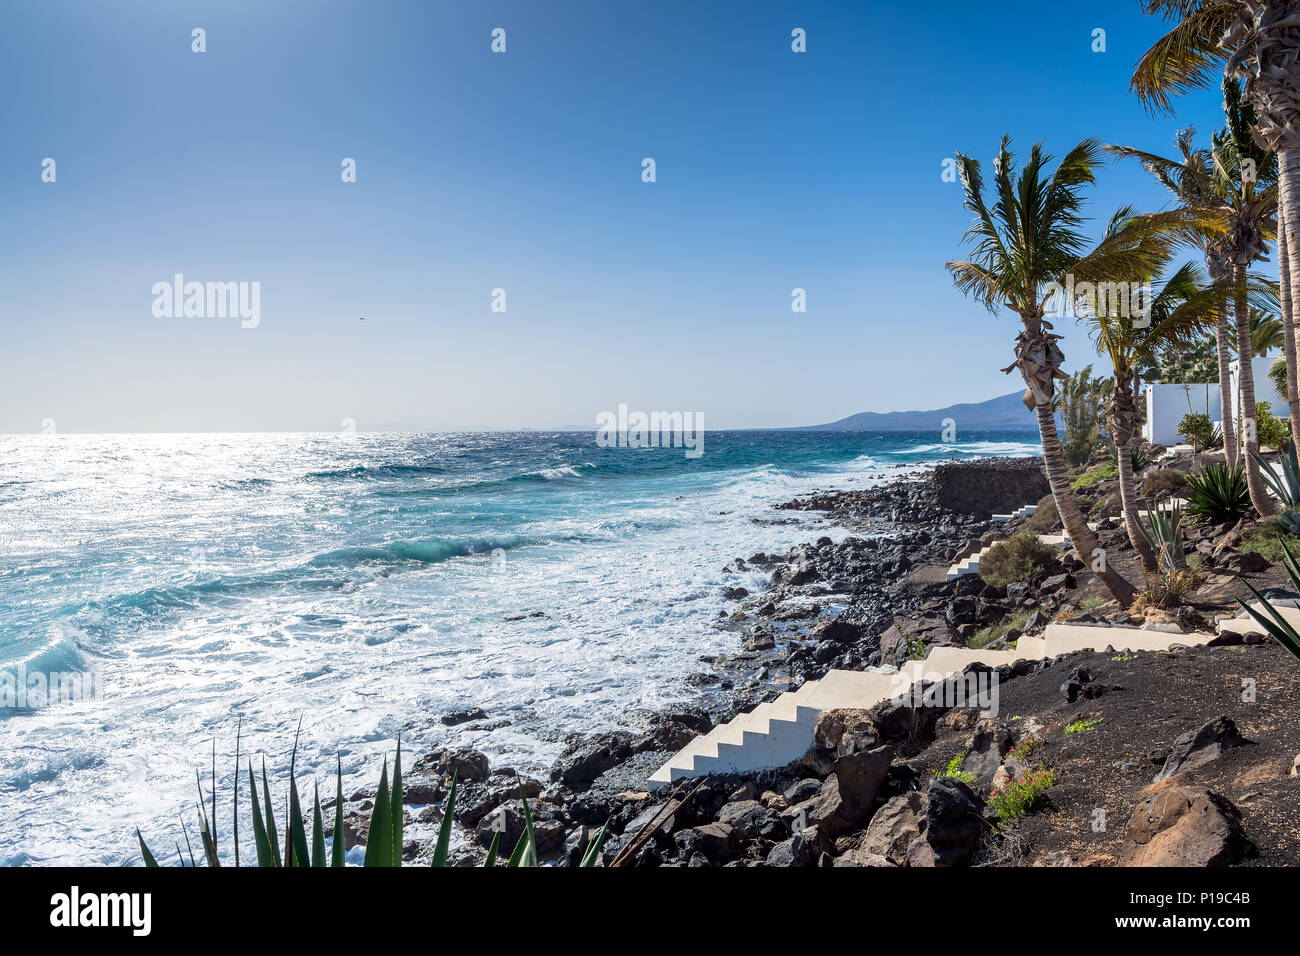 La vue quotidienne de littoral et l'océan Atlantique à Puerto del Carmen, Lanzarote, Espagne Banque D'Images